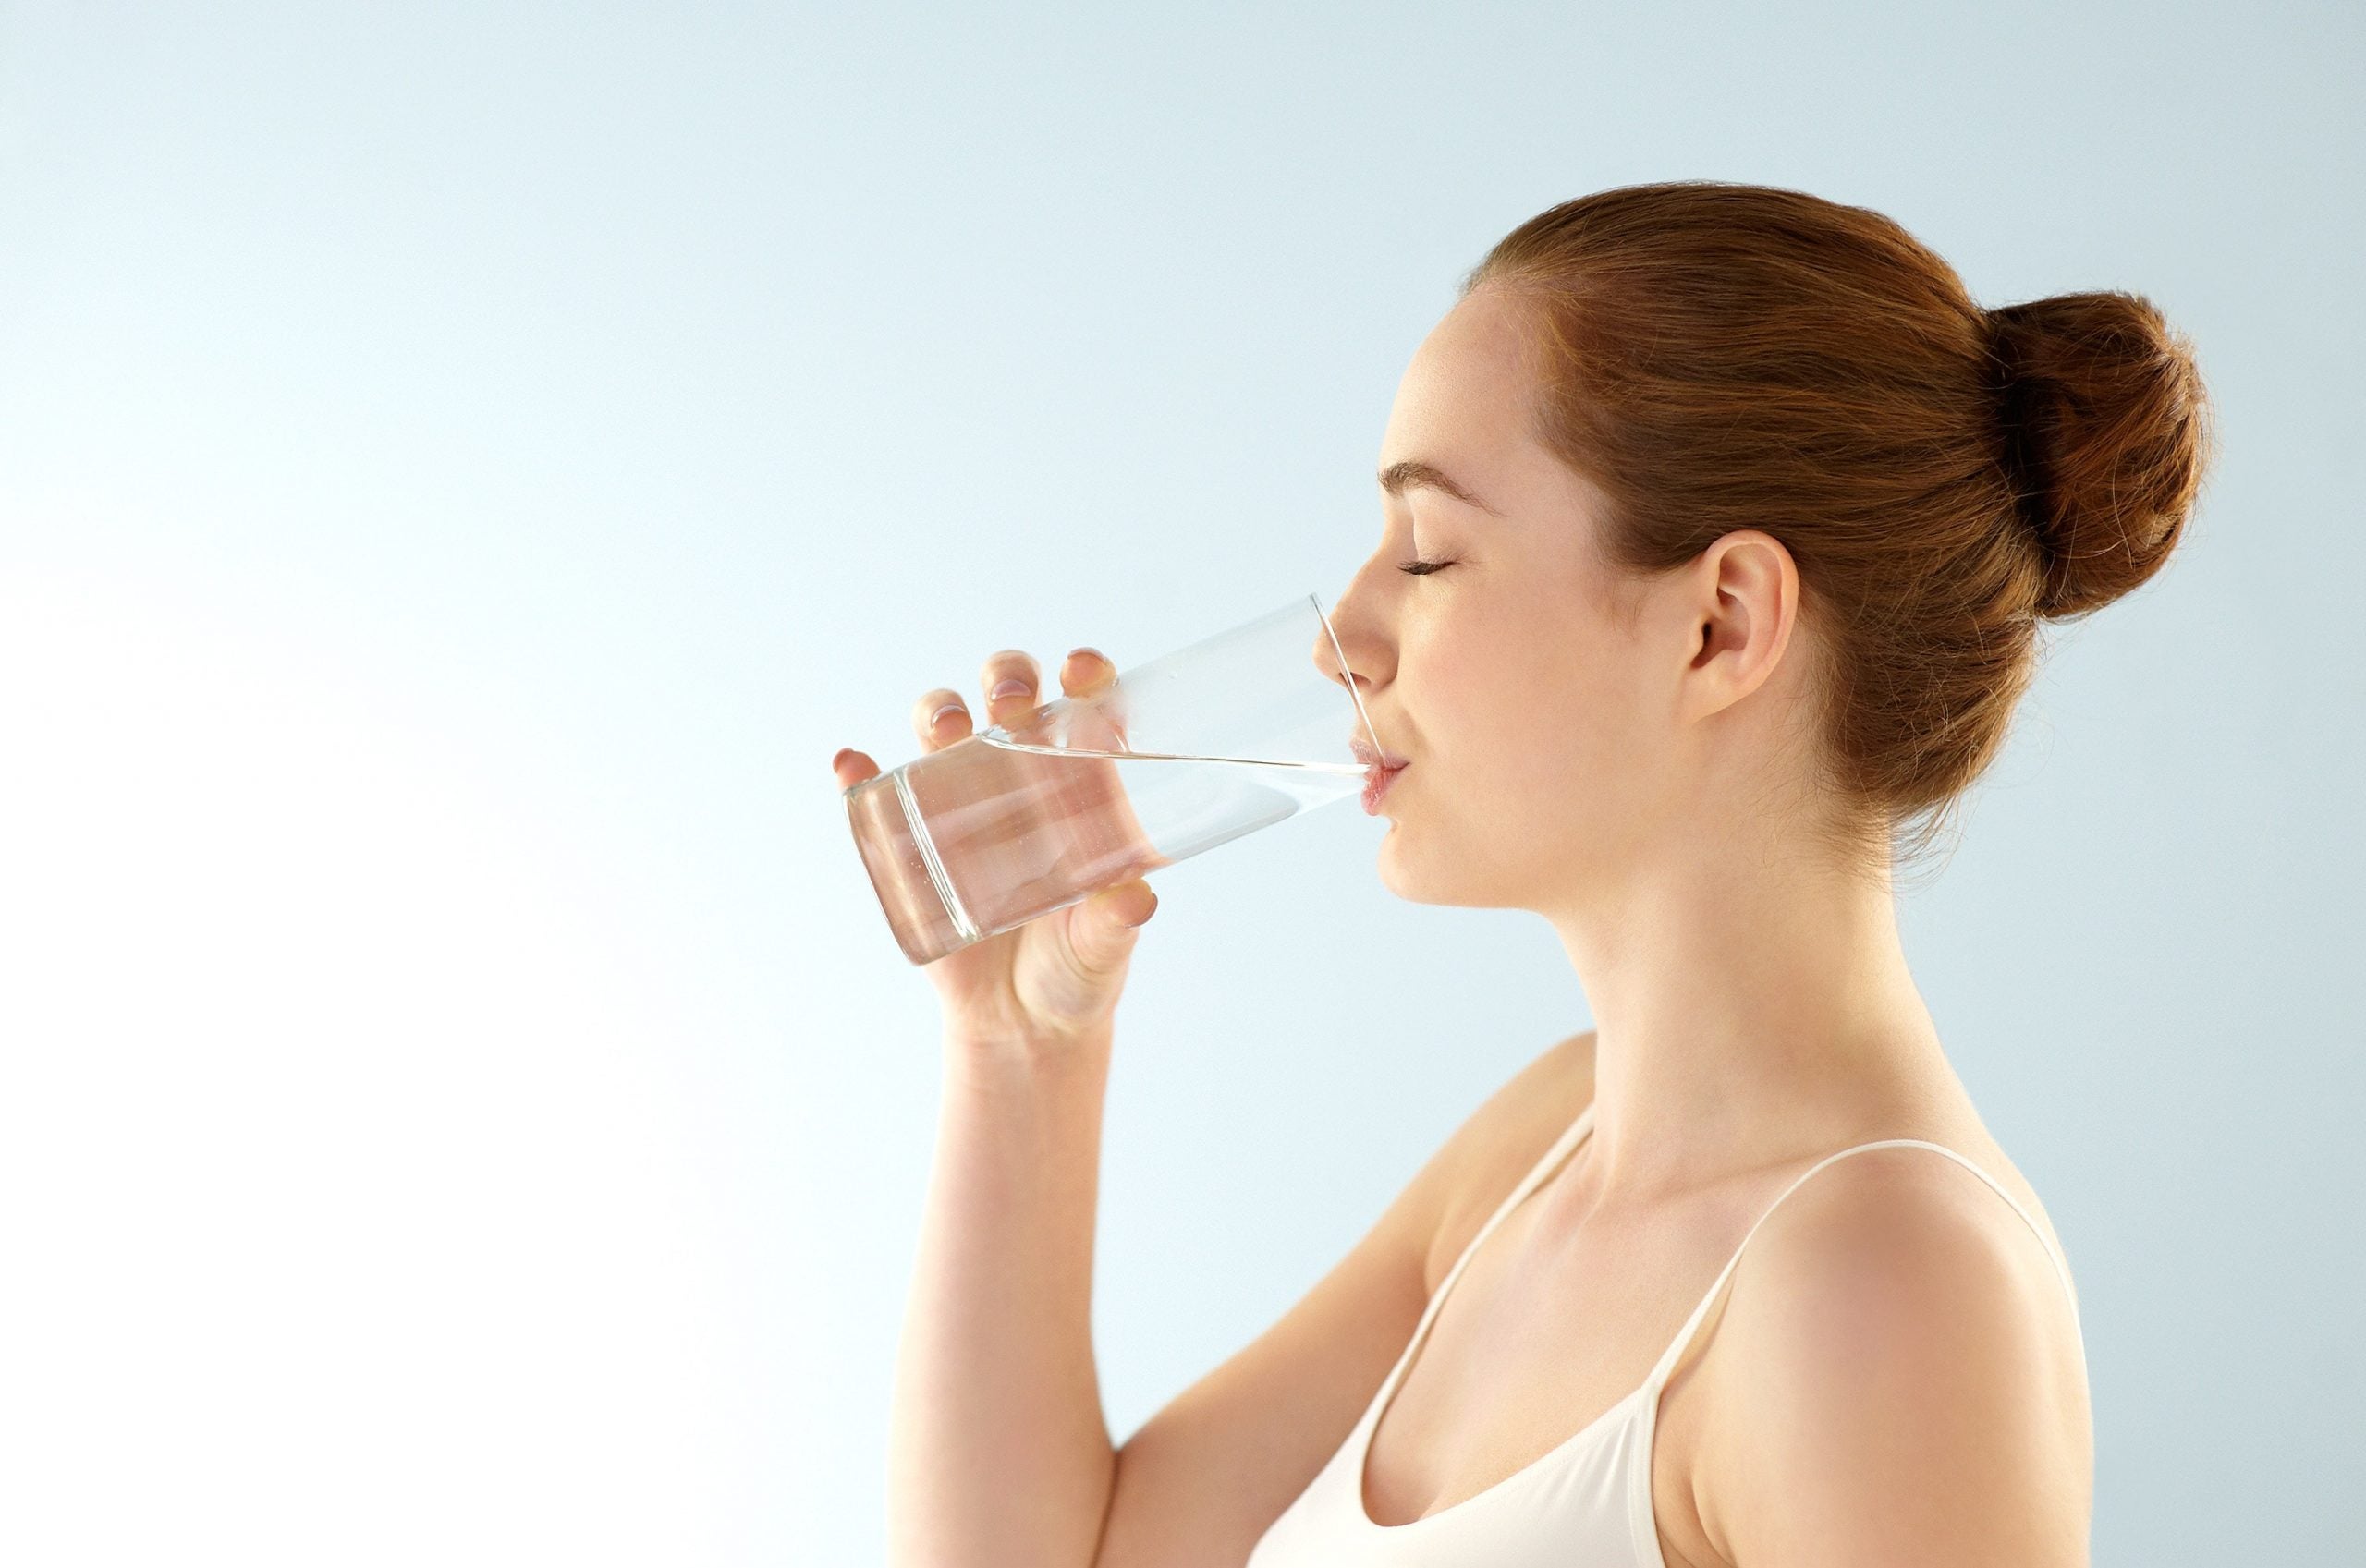 El agua es una fuente muy importante para mantenerse sano y alivia la ansiedad de comer al extremo.